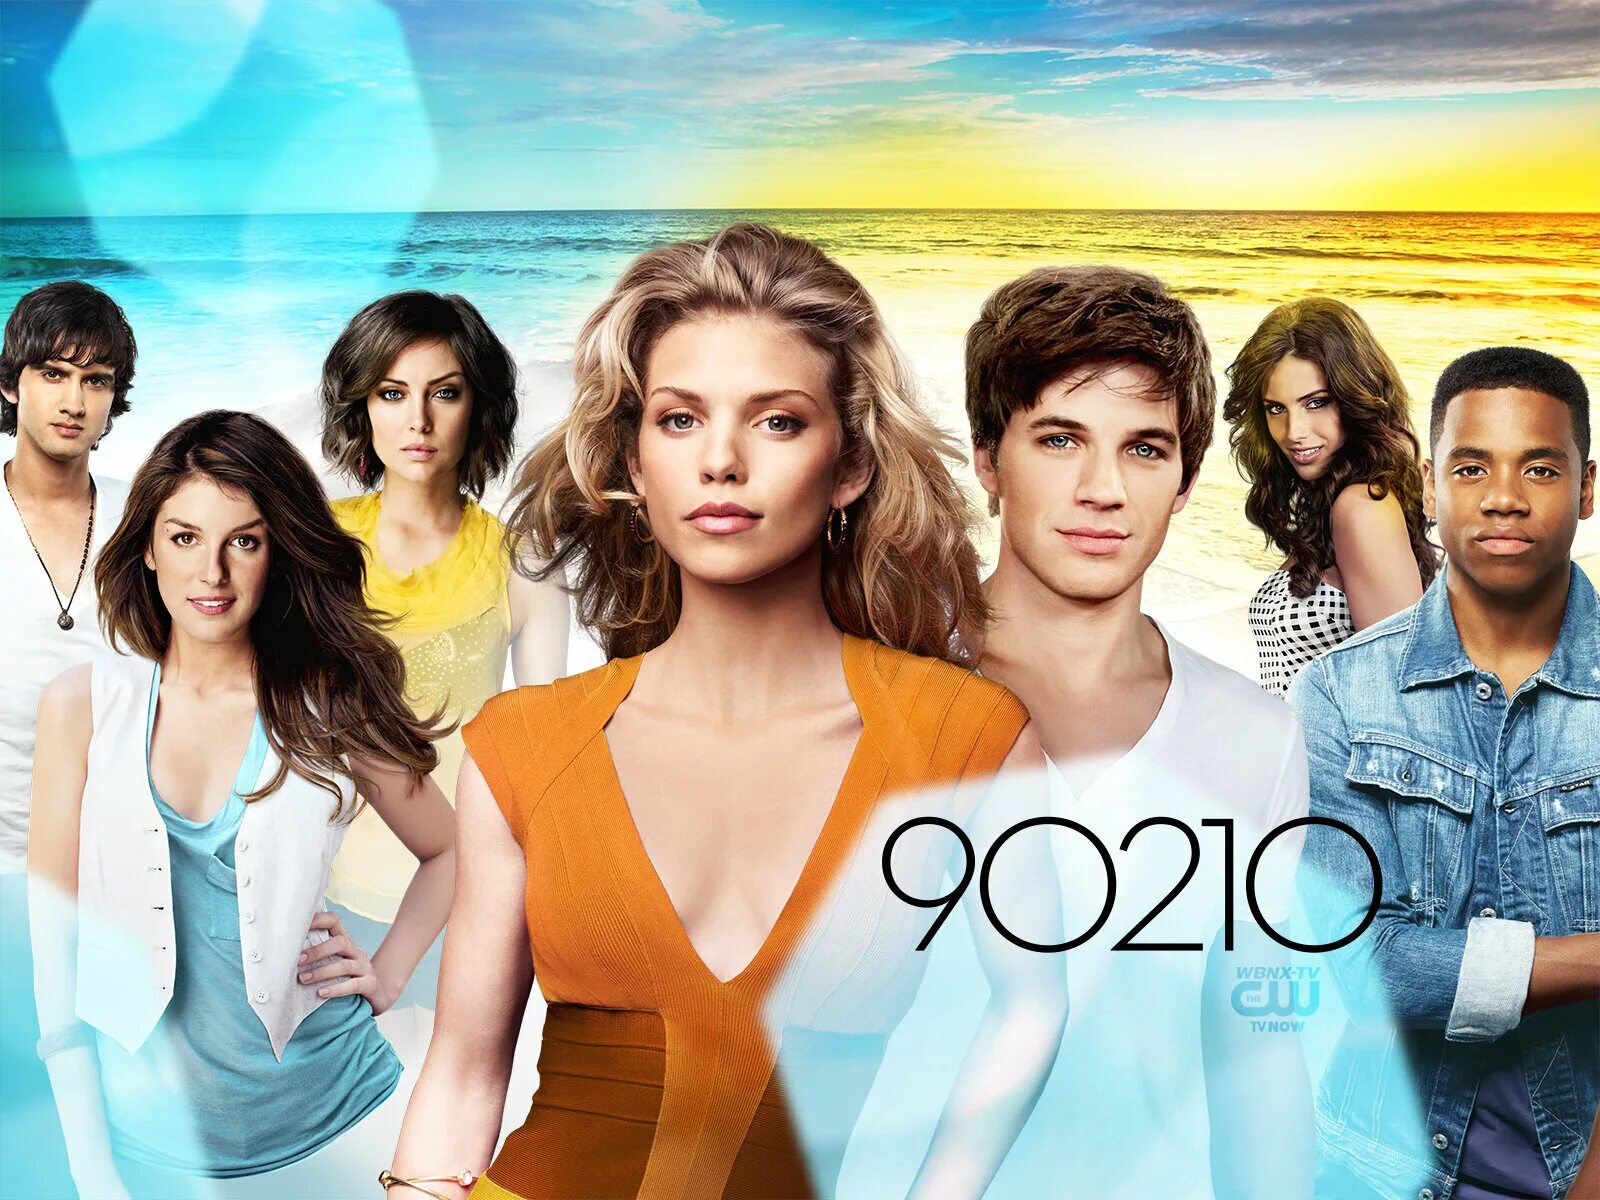 Новое поколение 60. Беверли-Хиллз 90210 новое поколение. Брианна Хоуи 90210 новое поколение. Сидни Суини в Беверли-Хиллз 90210: новое поколение.